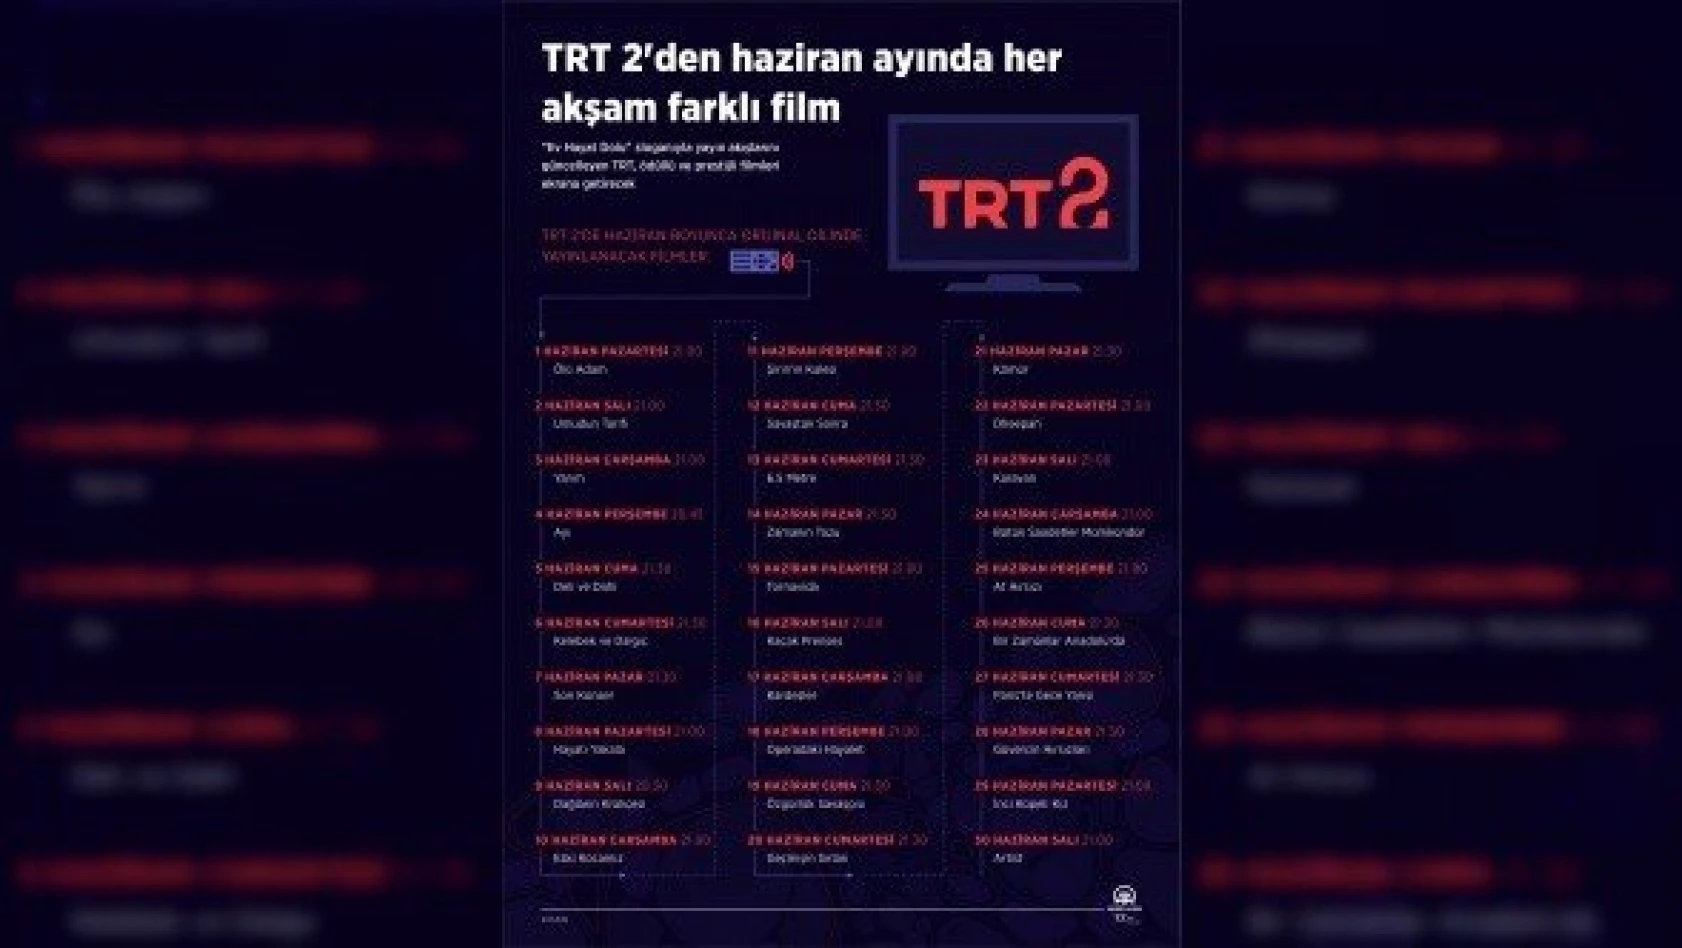 TRT 2'de haziran ayı boyunca her akşam farklı film